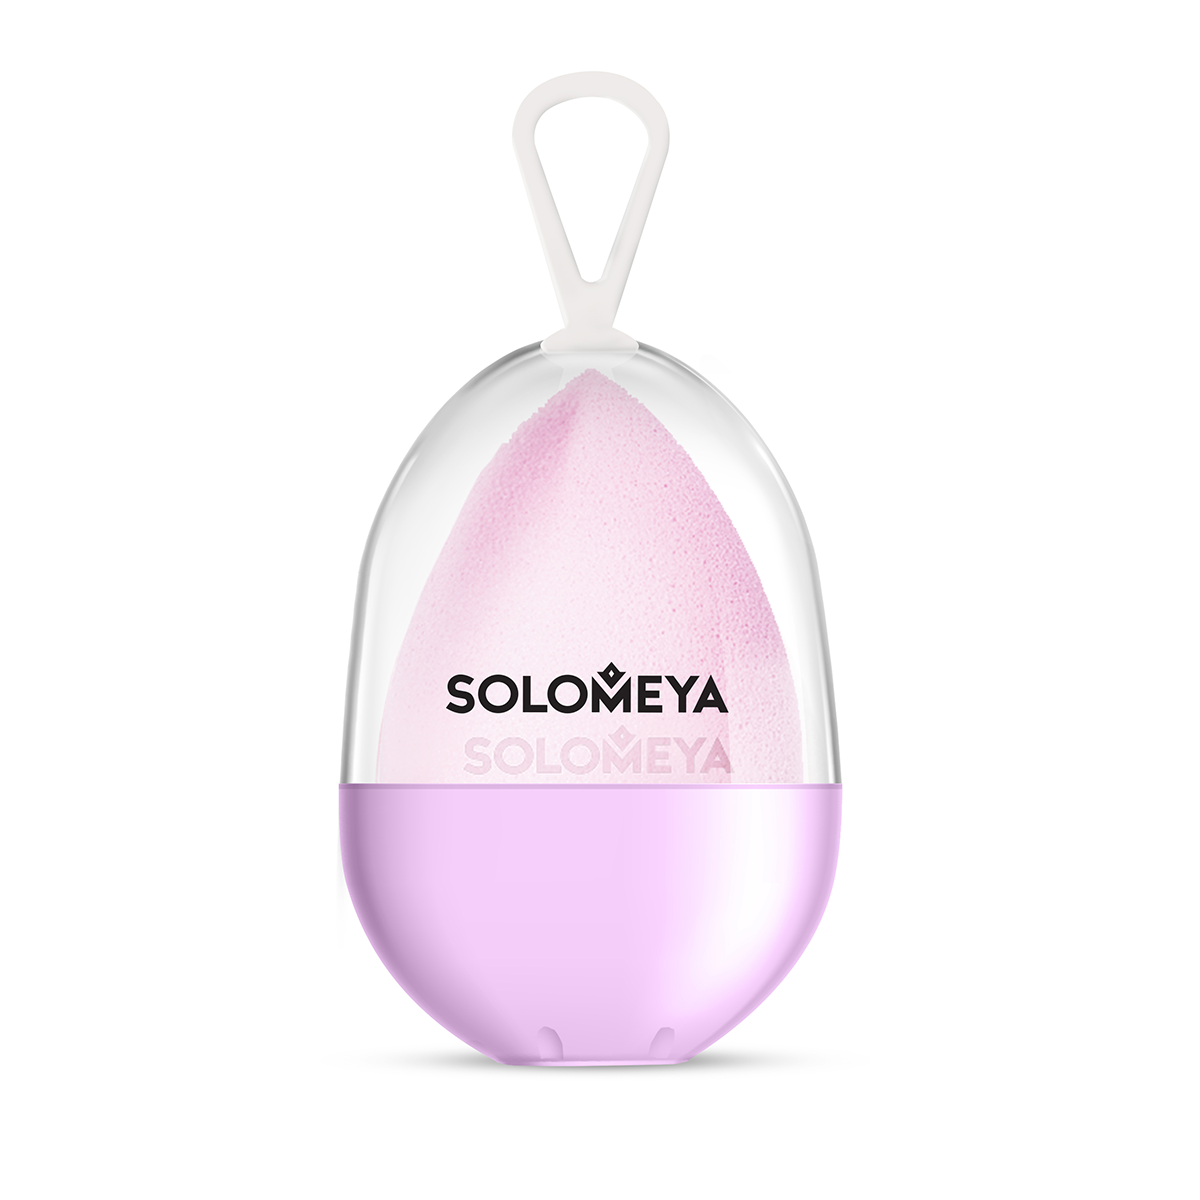 SOLOMEYA Спонж косметический для макияжа со срезом лиловый / Flat End blending sponge,  lilac 1 шт спонж solomeya косметический для макияжа со срезом лиловый 1 шт